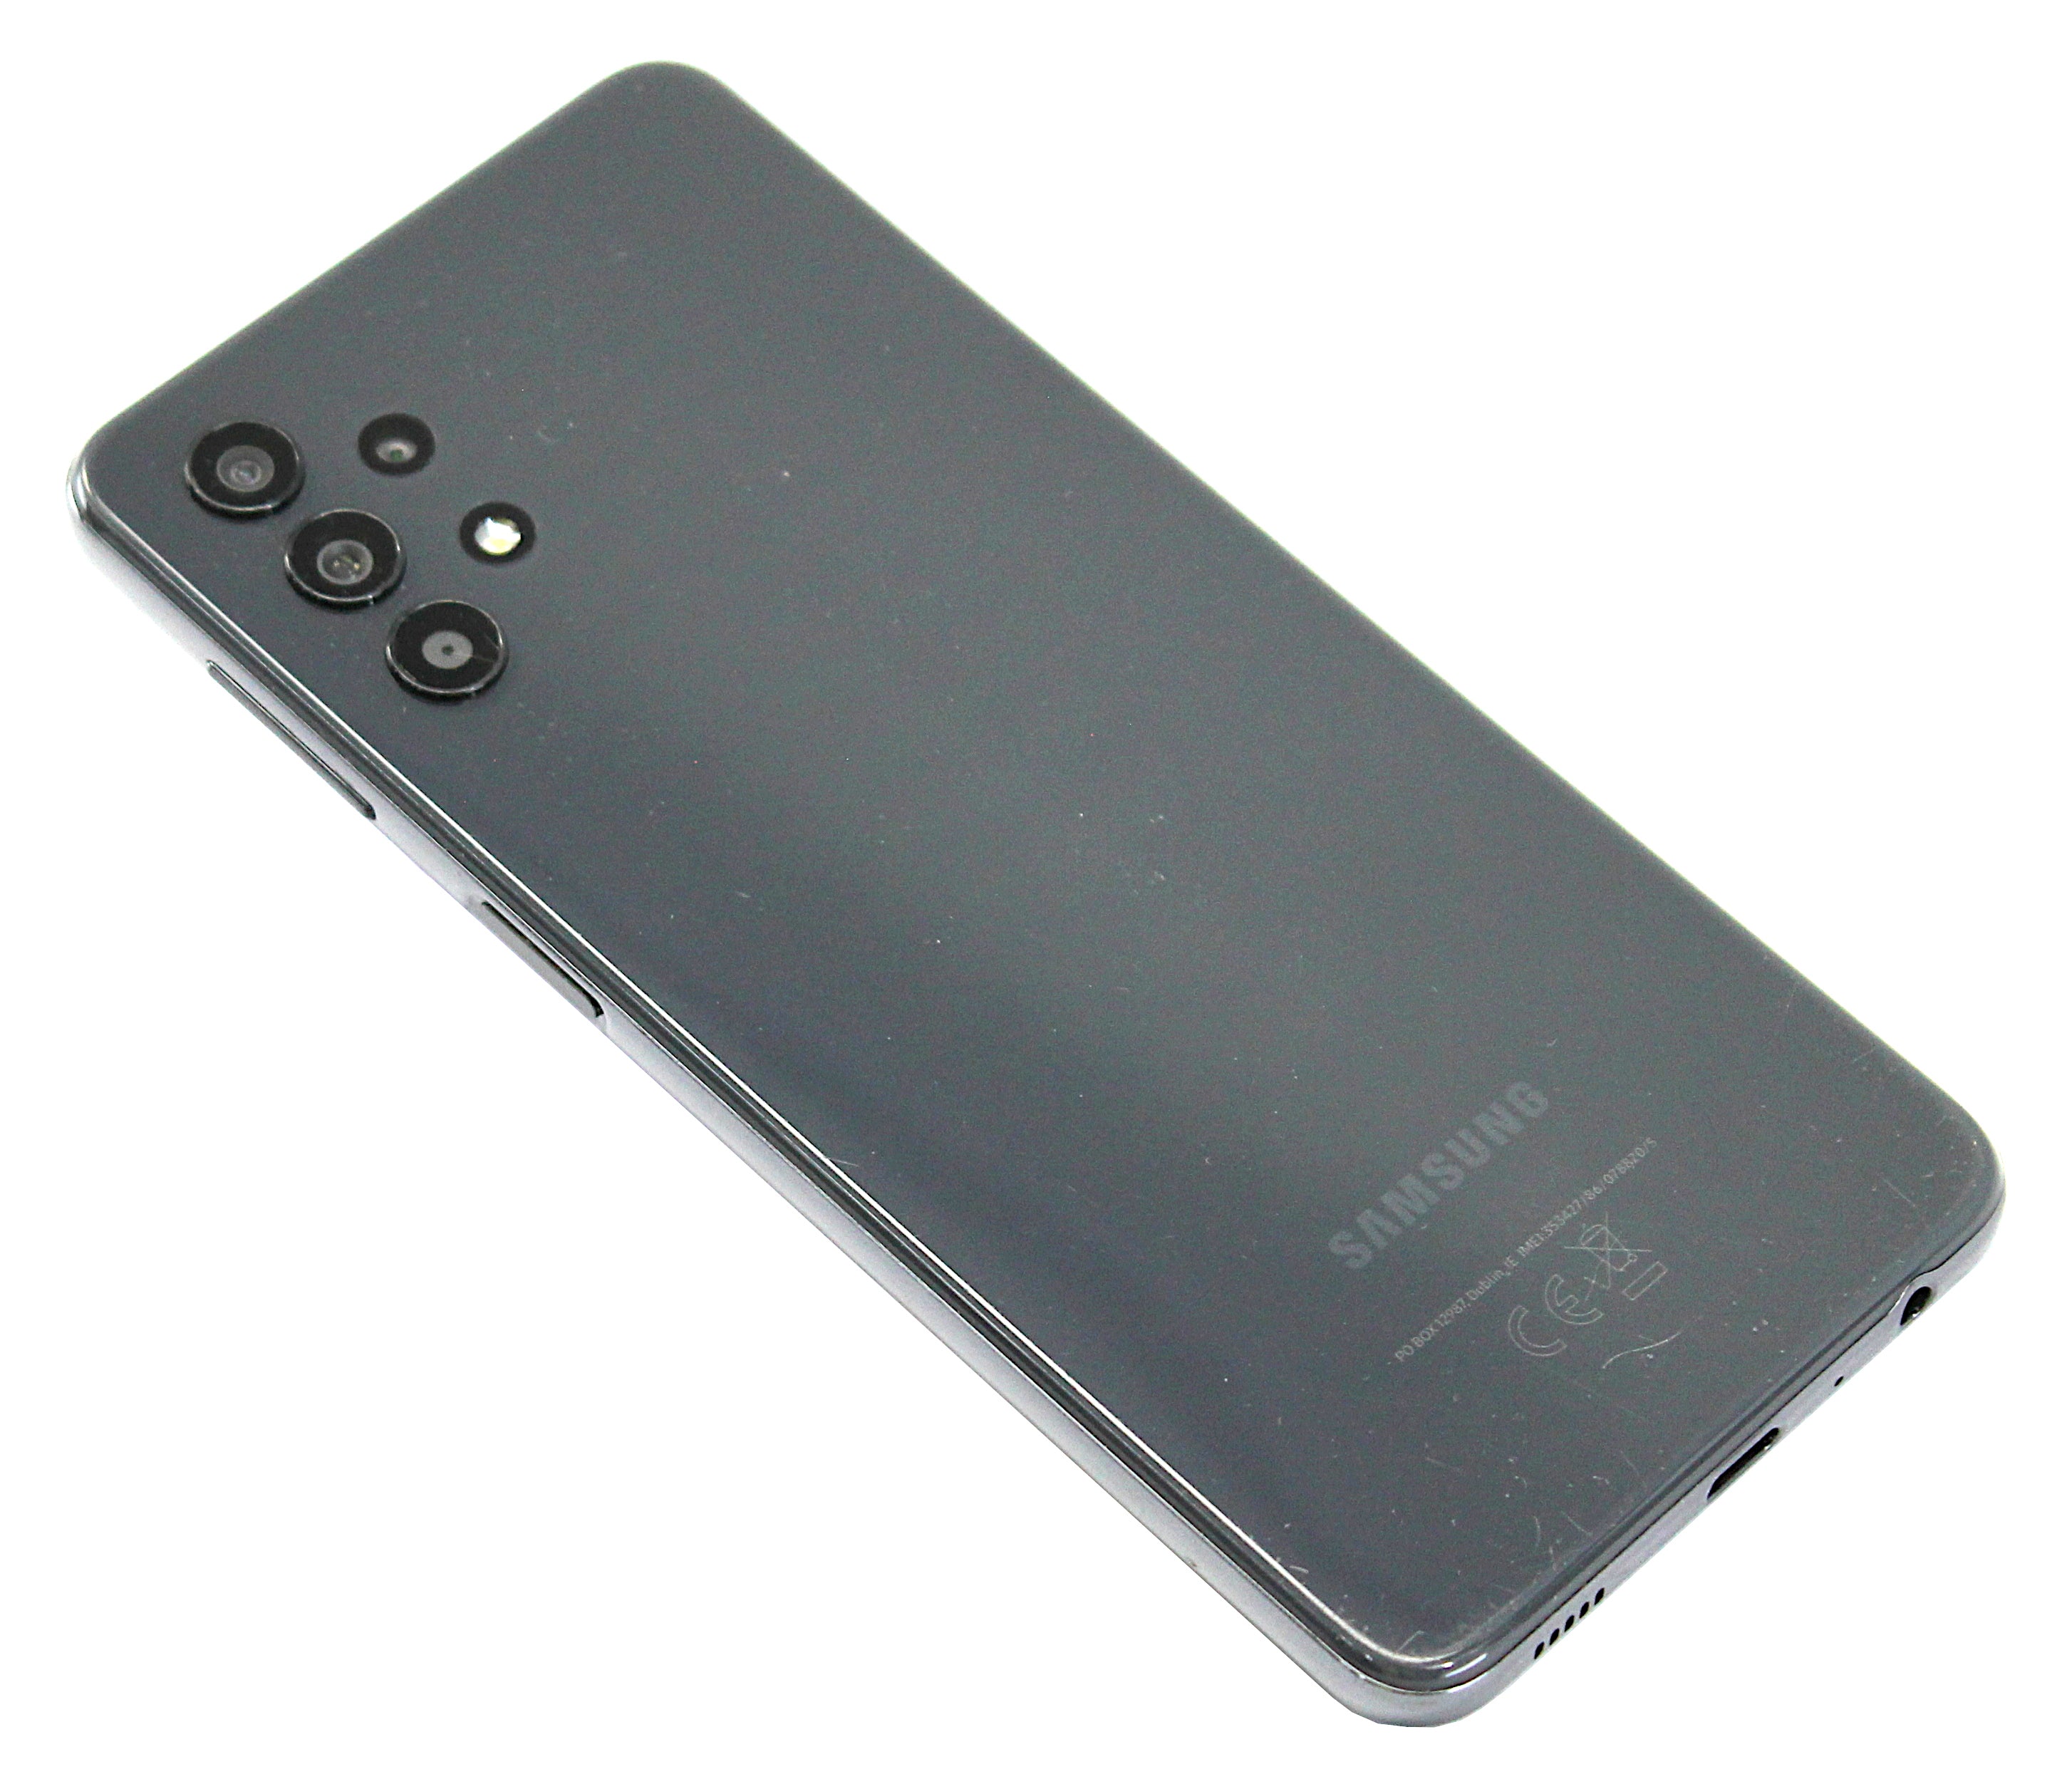 Samsung Galaxy A32 5G Smartphone, 64GB, Unlocked, Awesome Black, SM-A326B